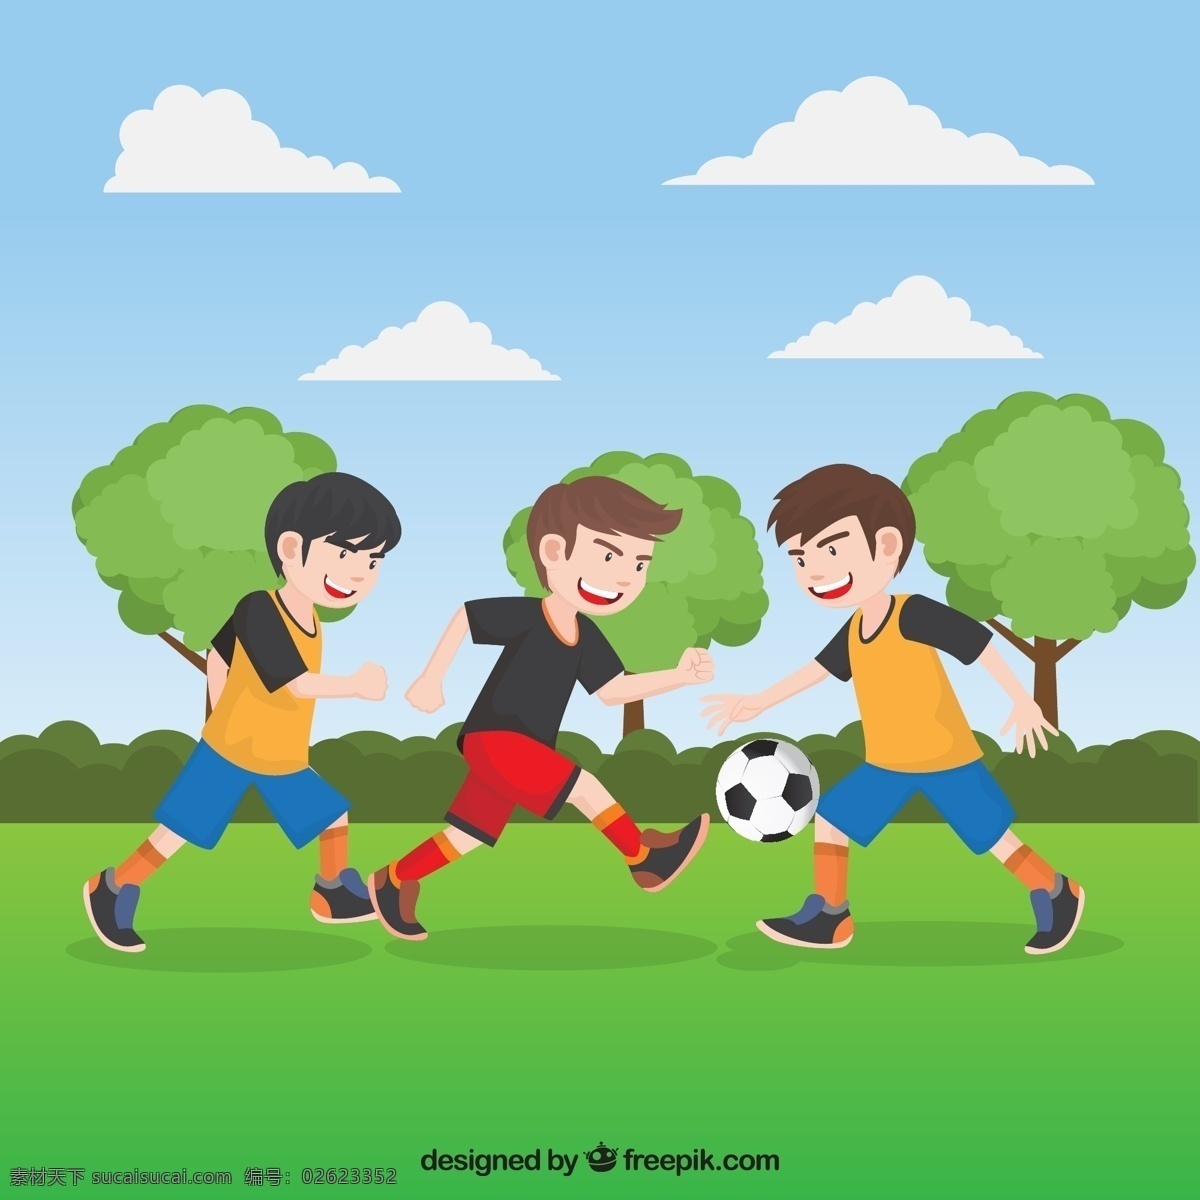 草地 上 踢 足球 男孩 运动 云朵 树木 草丛 踢球 动漫动画 动漫人物